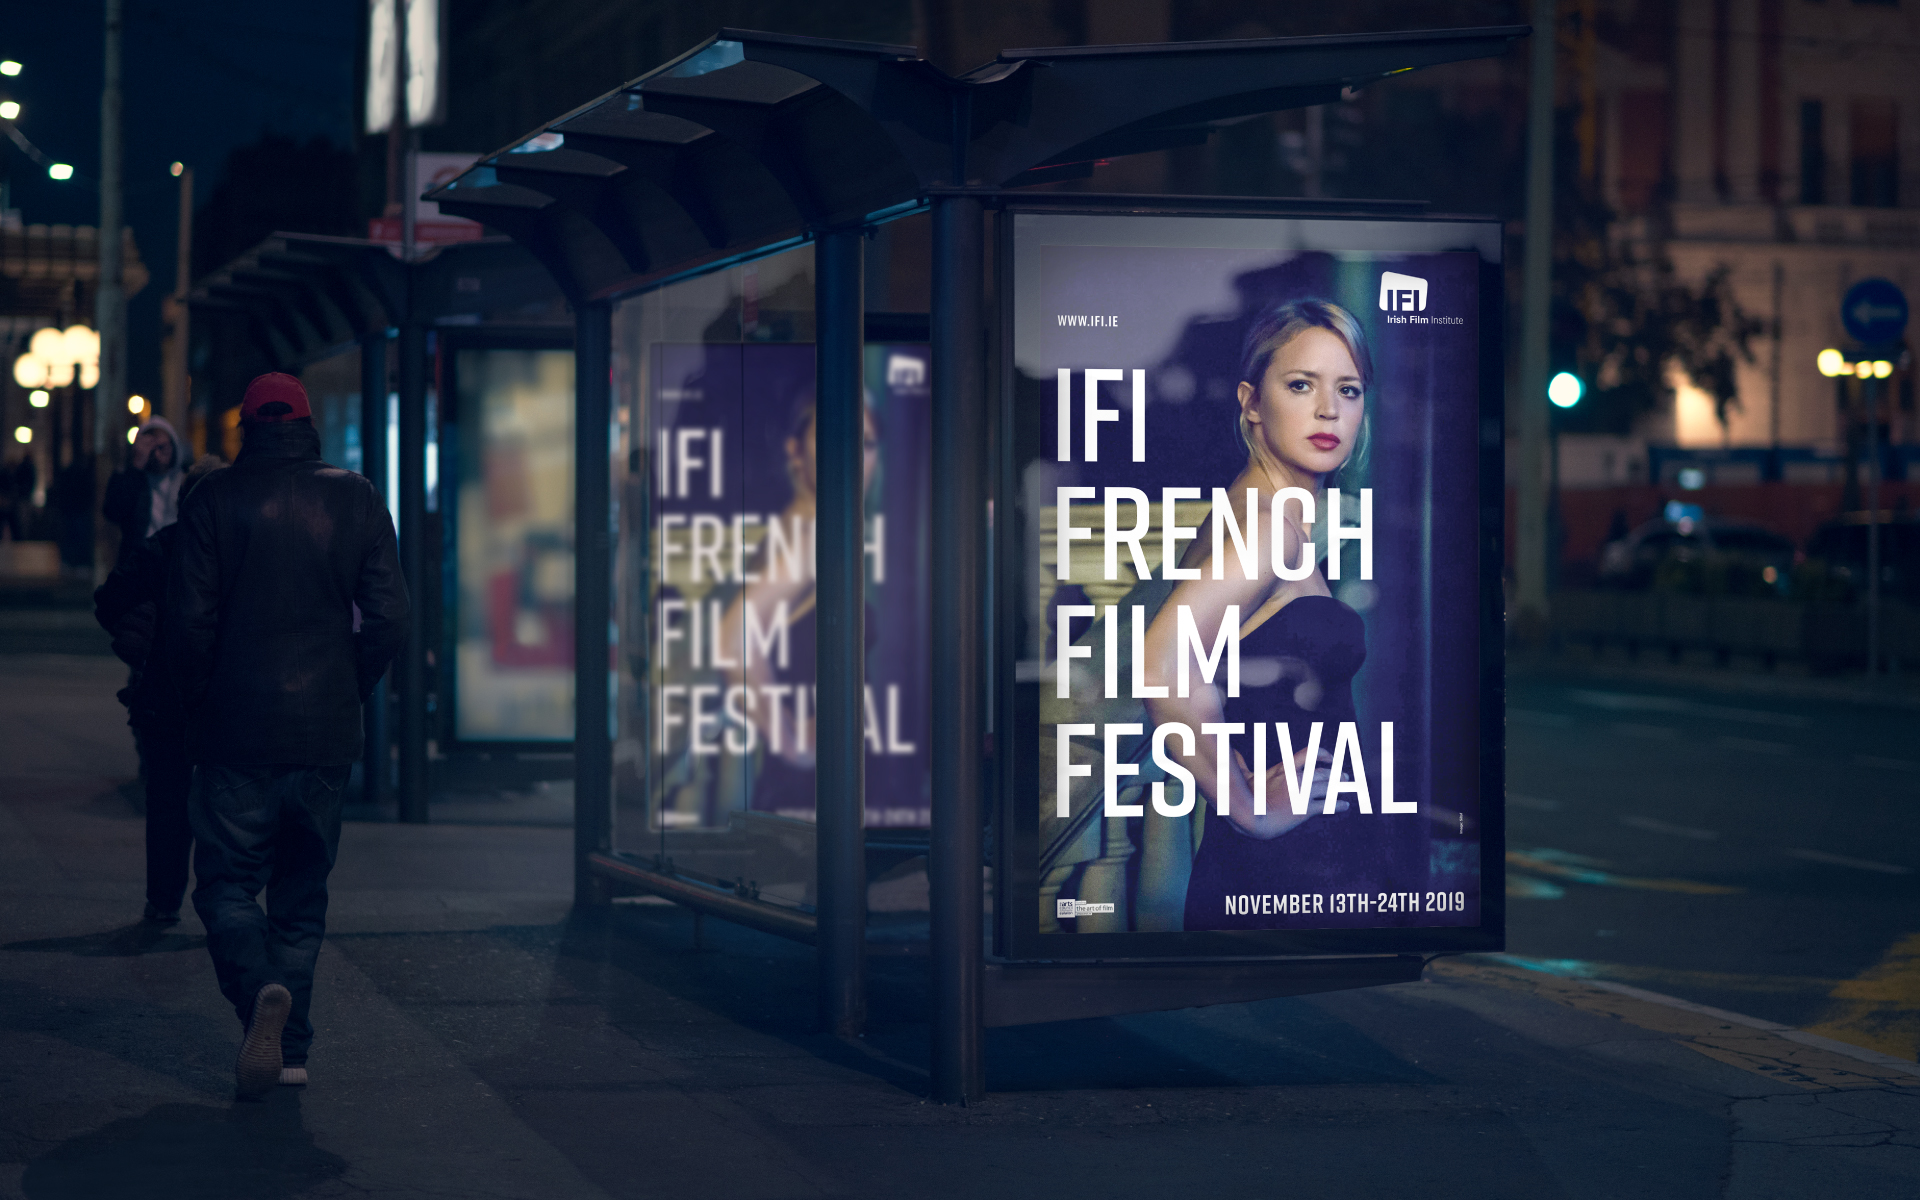 Irish Film Institute French Film Festival